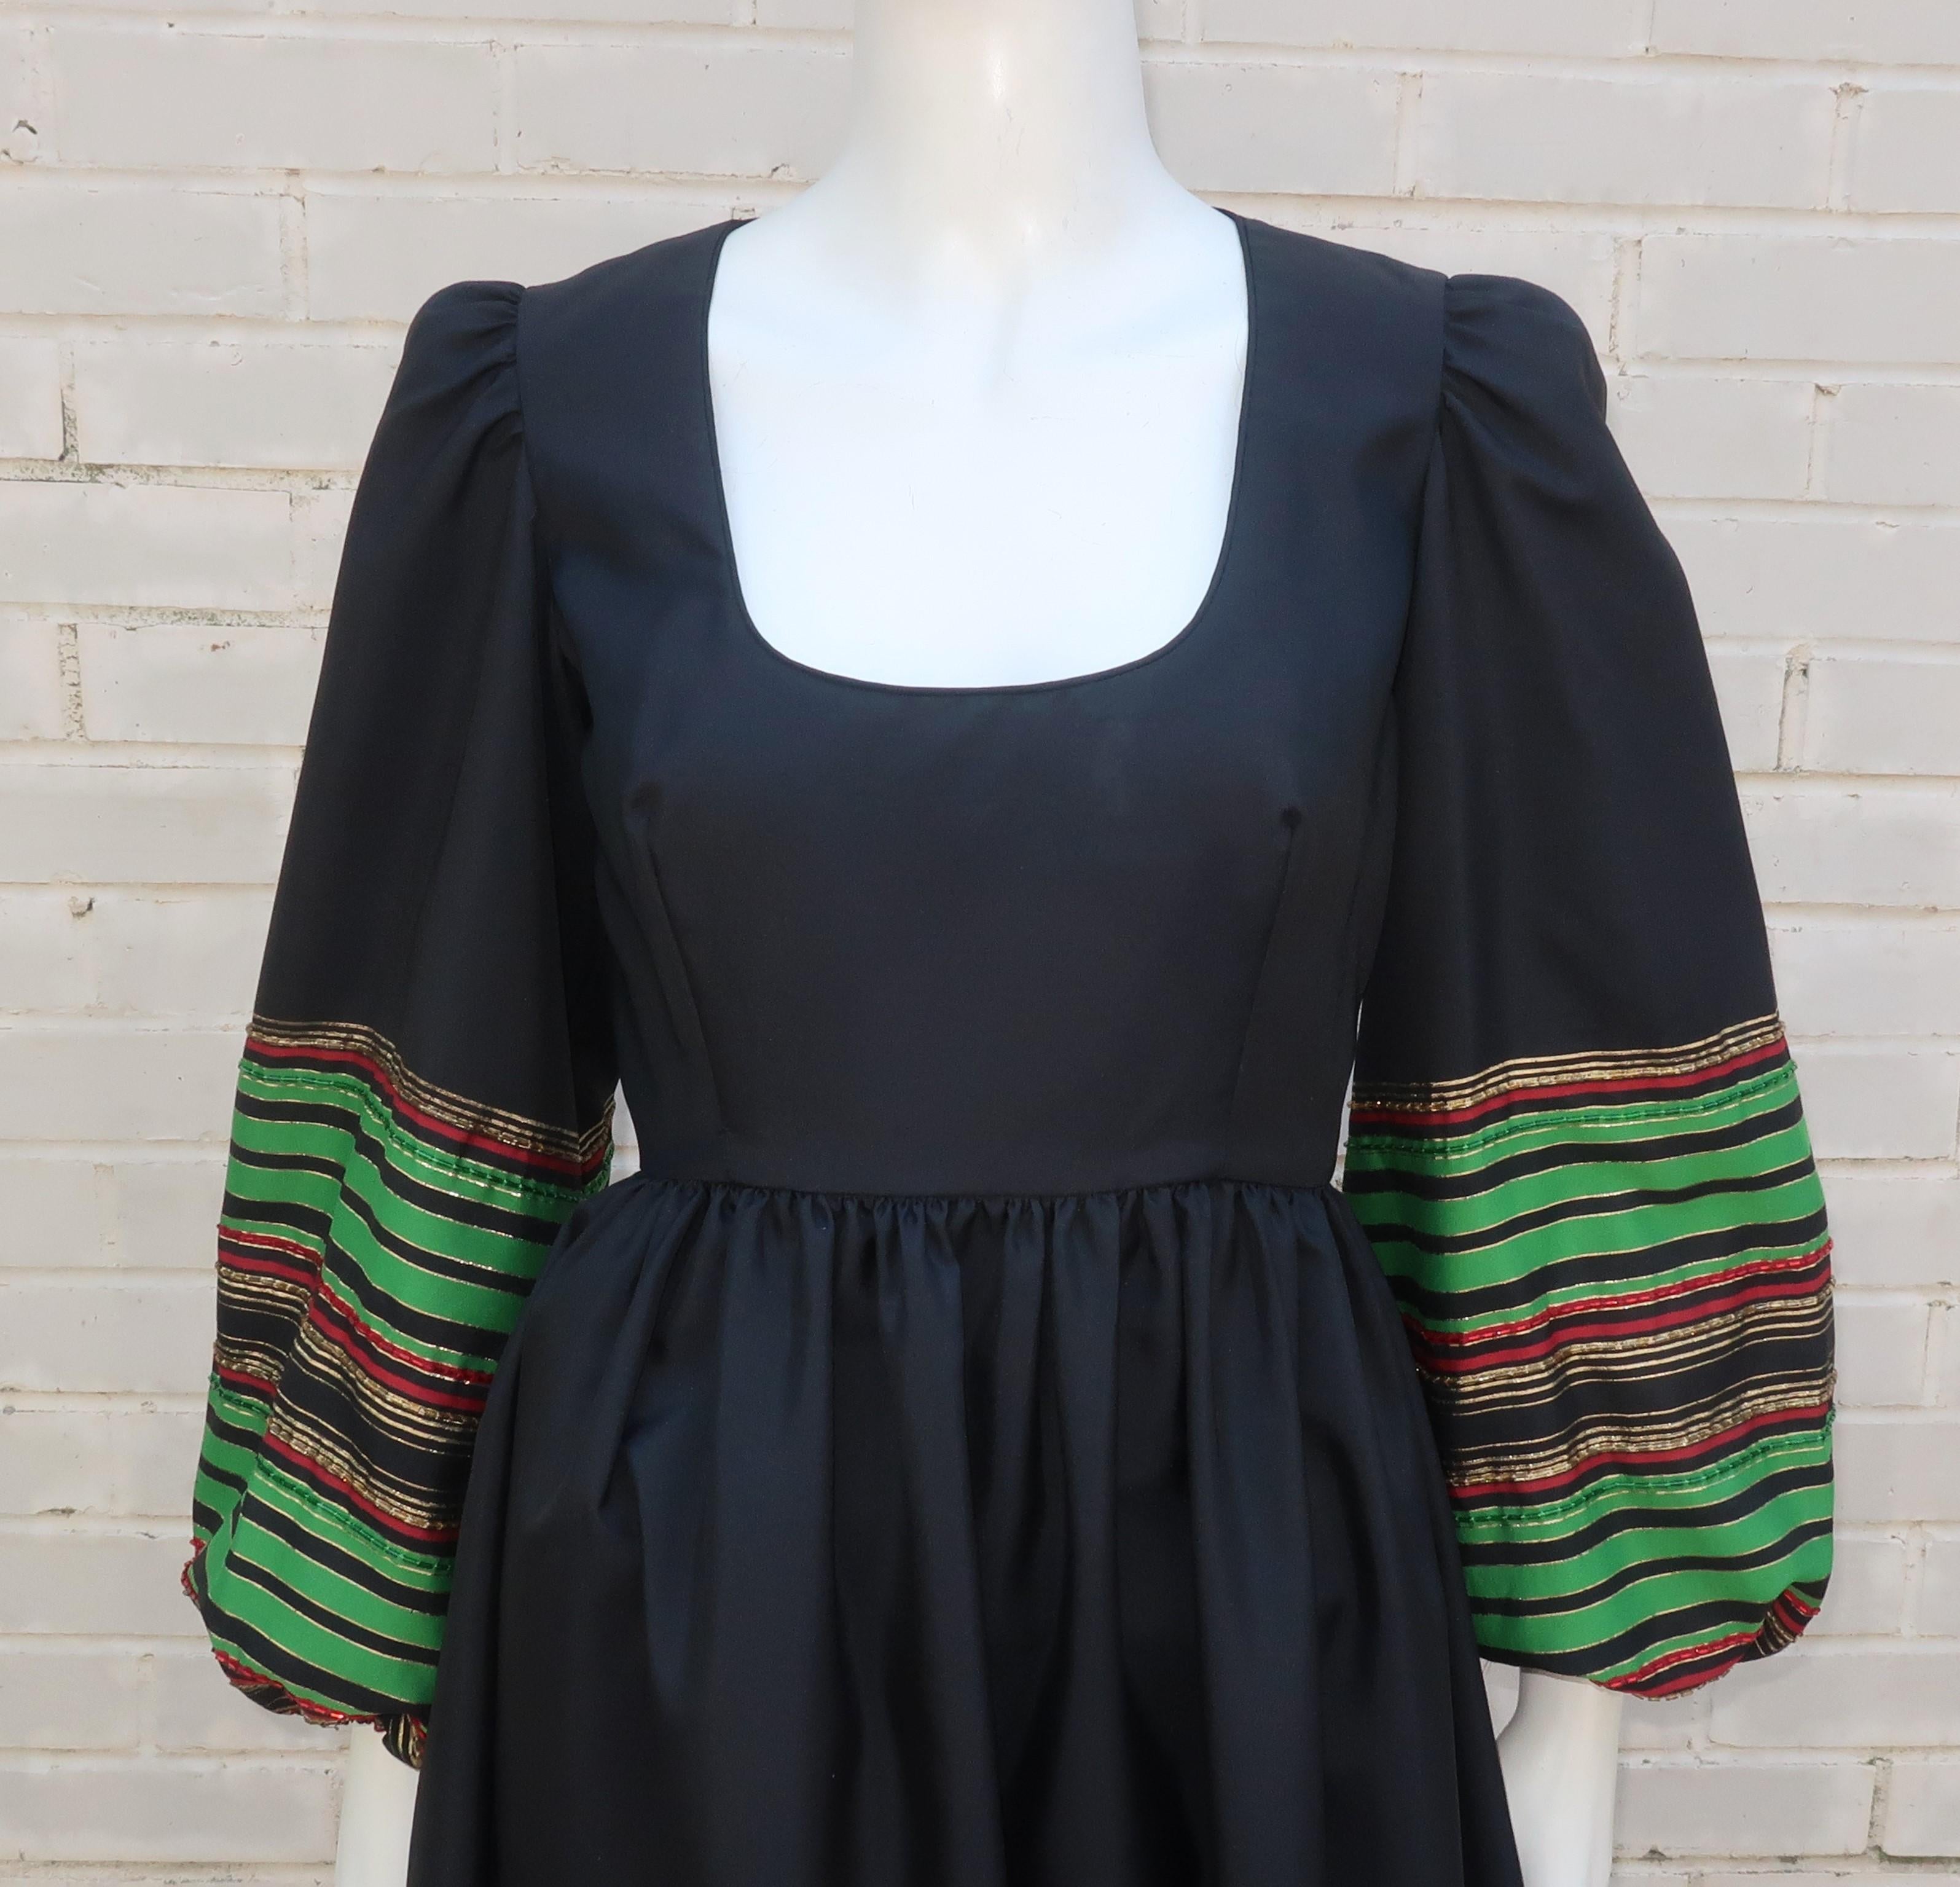 schwarzes Maxikleid aus mattem Taft von Victoria Royal aus den 1970er Jahren mit perlenbesetzten Streifen an Ärmeln und Saum in Rot-, Grün- und Goldlamé-Tönen.  Das Kleid mit Reißverschluss und Haken auf der Rückseite hat einen Rundhalsausschnitt,